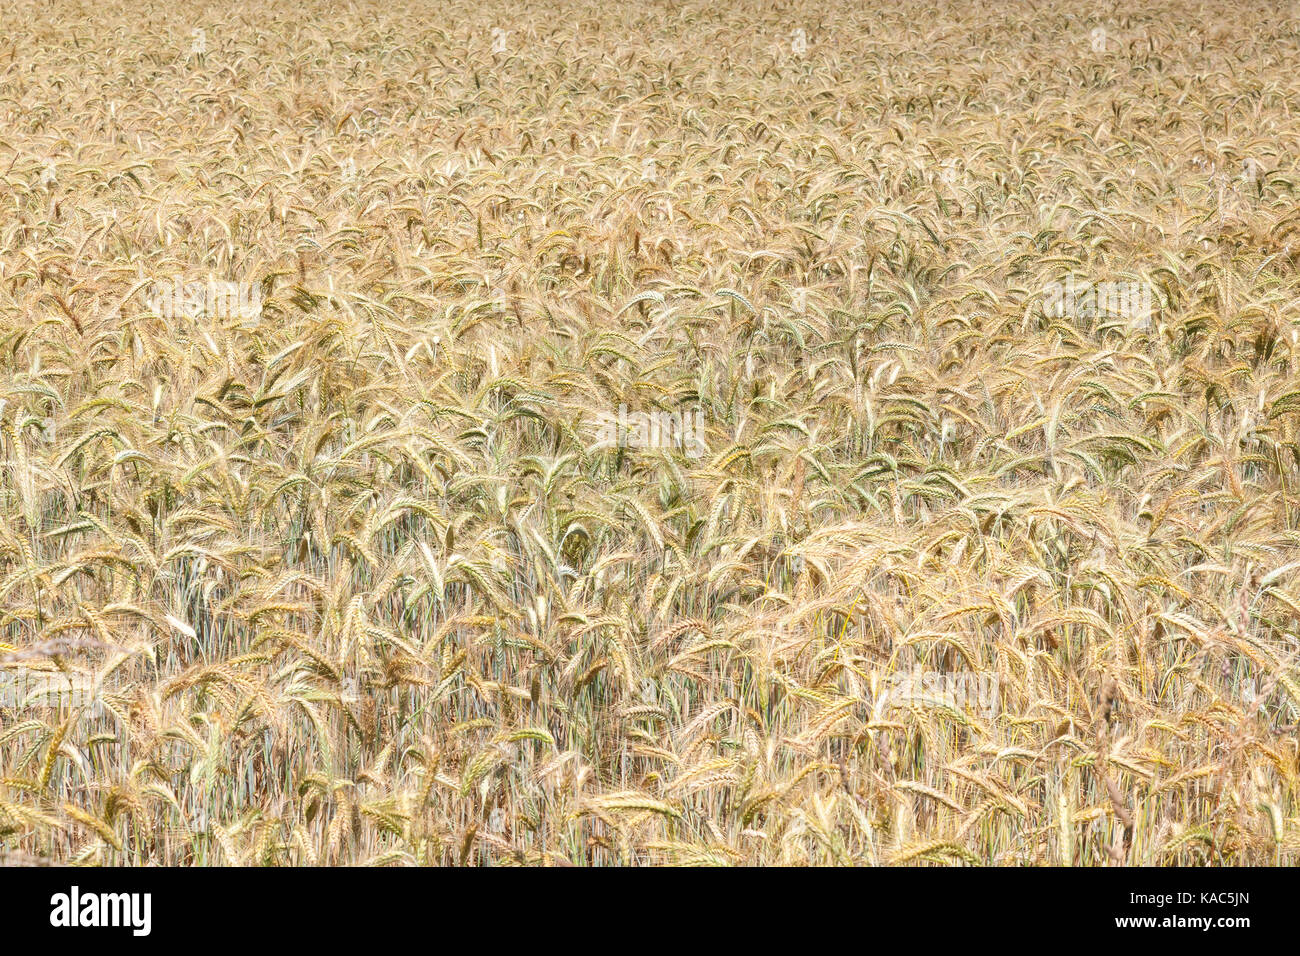 Farben der reifenden Ähren, Triticum ästivum, in einer landwirtschaftlichen Feld in einem full frame Hintergrund Stockfoto